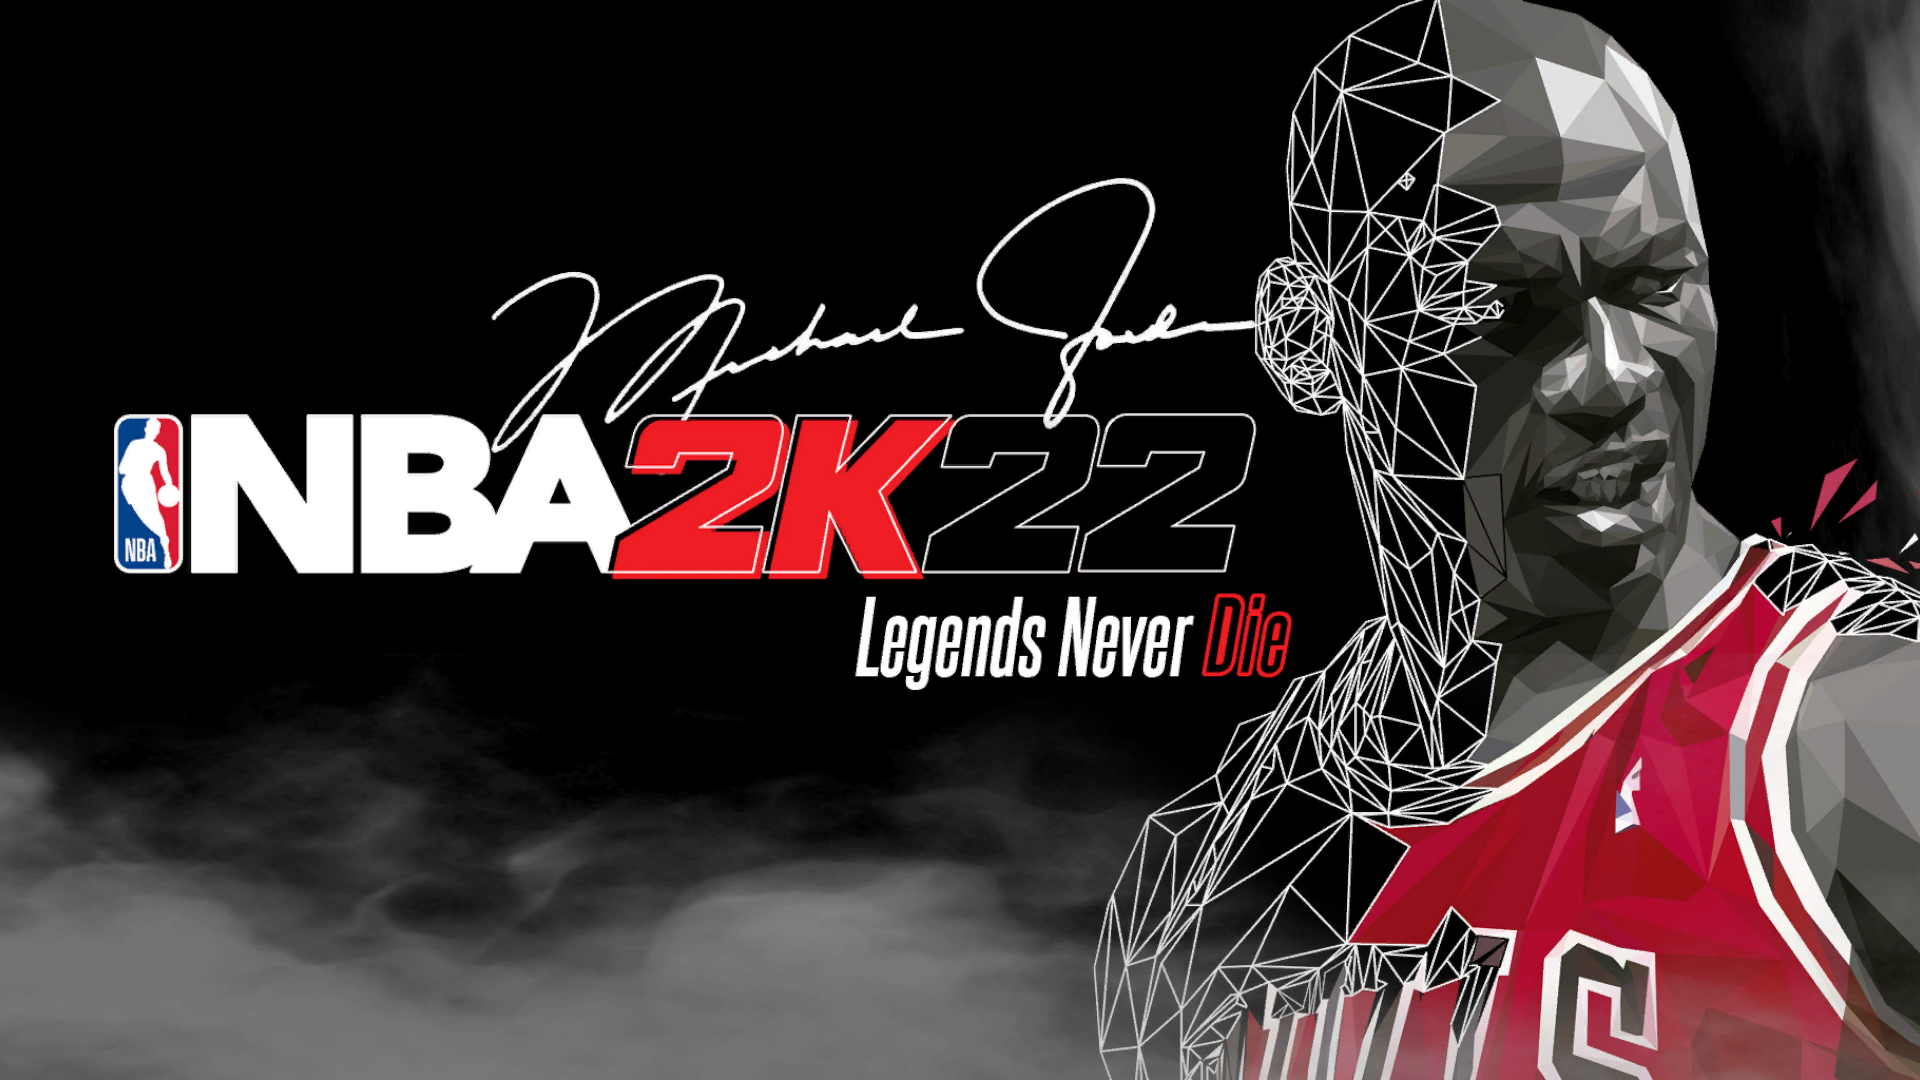 NBA 2K21 2KGOD Roster Update 06.28.201 + NBA 2K22 Presentation Source for NBA 2K21 Mods